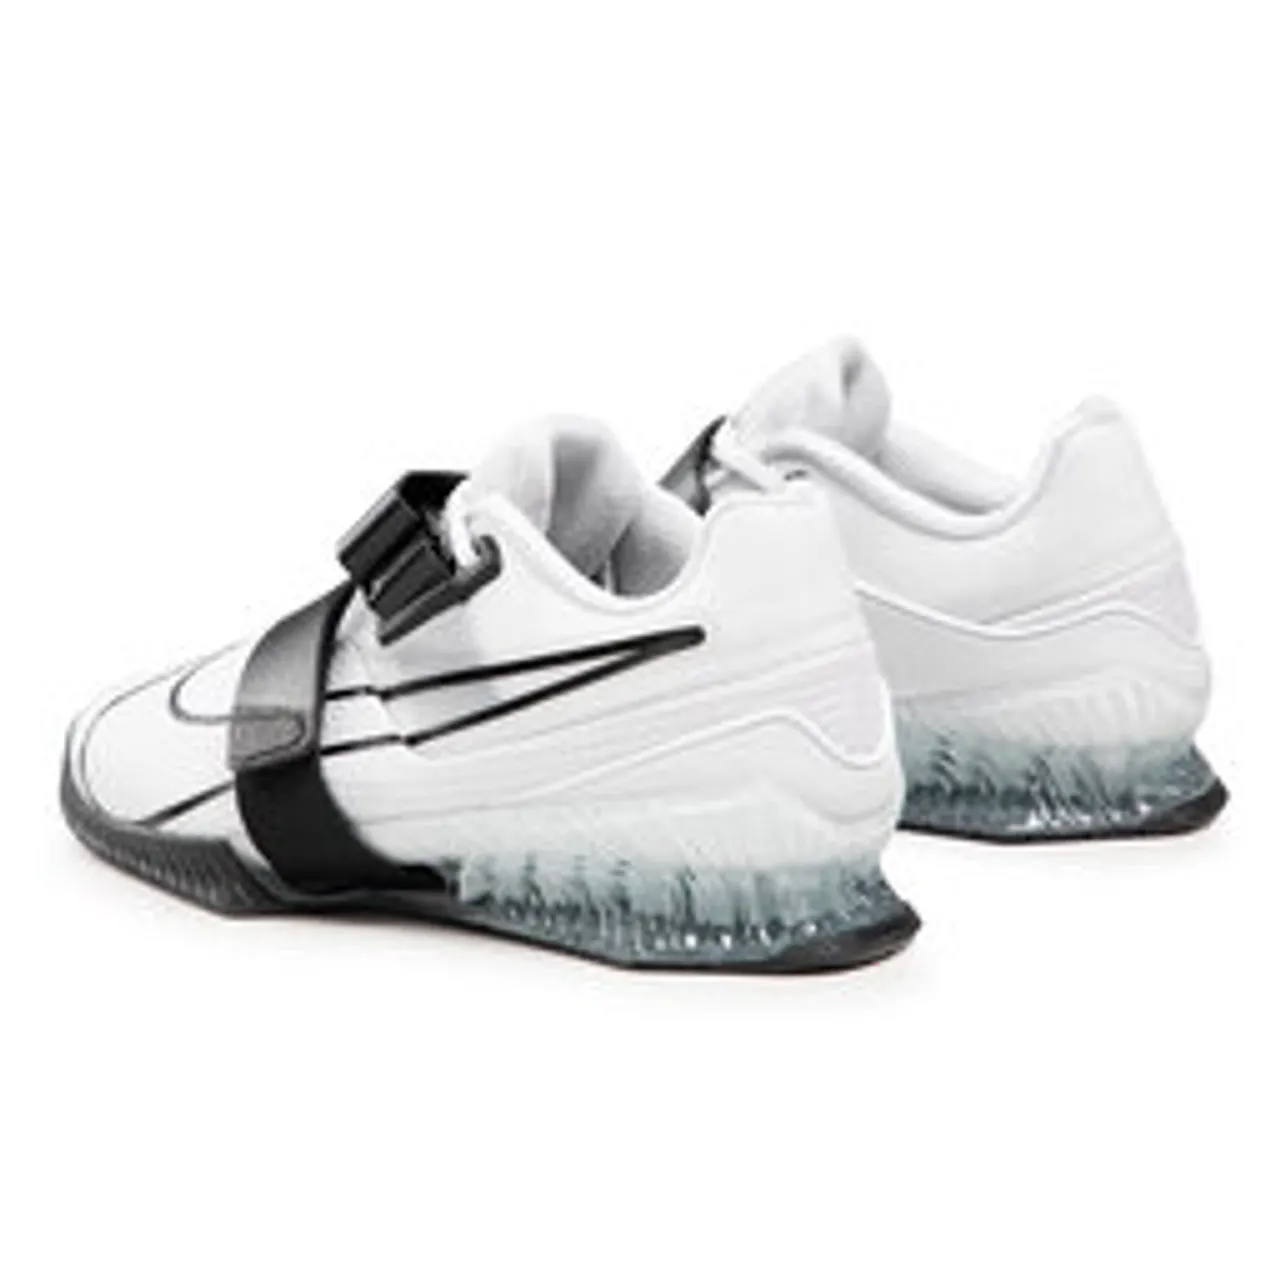 Schuhe Nike Romaleos 4 CD3463 101 White/Black/White